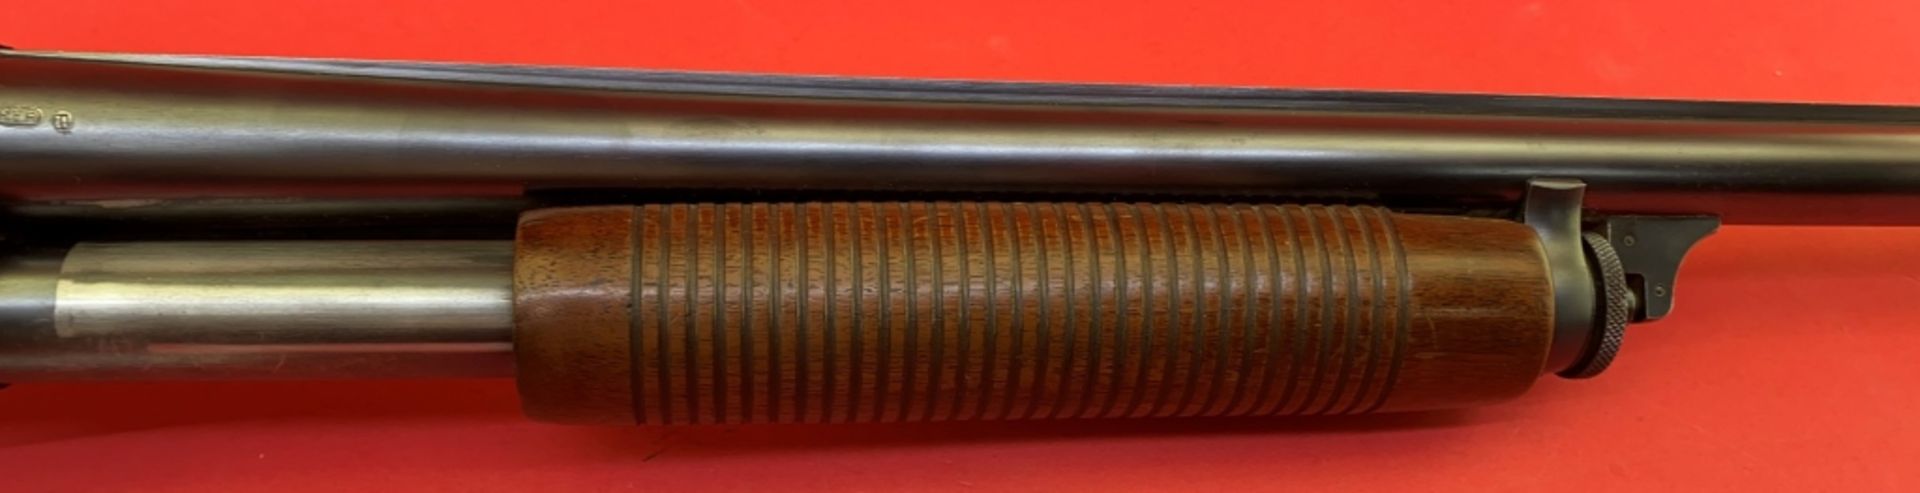 Remington 31 12 ga Shotgun - Image 5 of 14